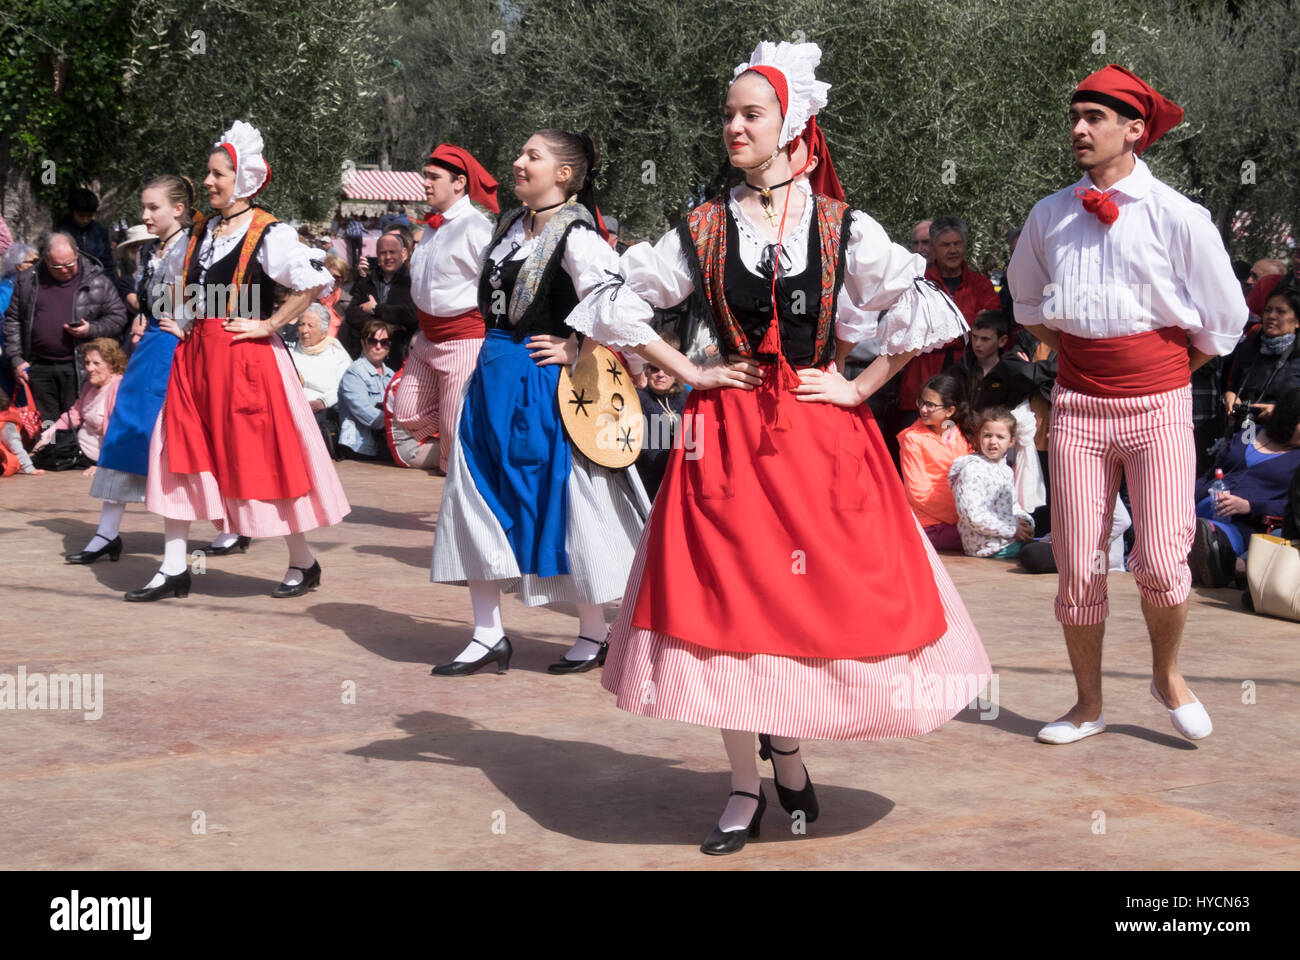 Bailarines de danza folklórica de Niza, Francia, realizando una danza  tradicional de la región Alpes-Maritime en trajes auténticos de la zona  Fotografía de stock - Alamy